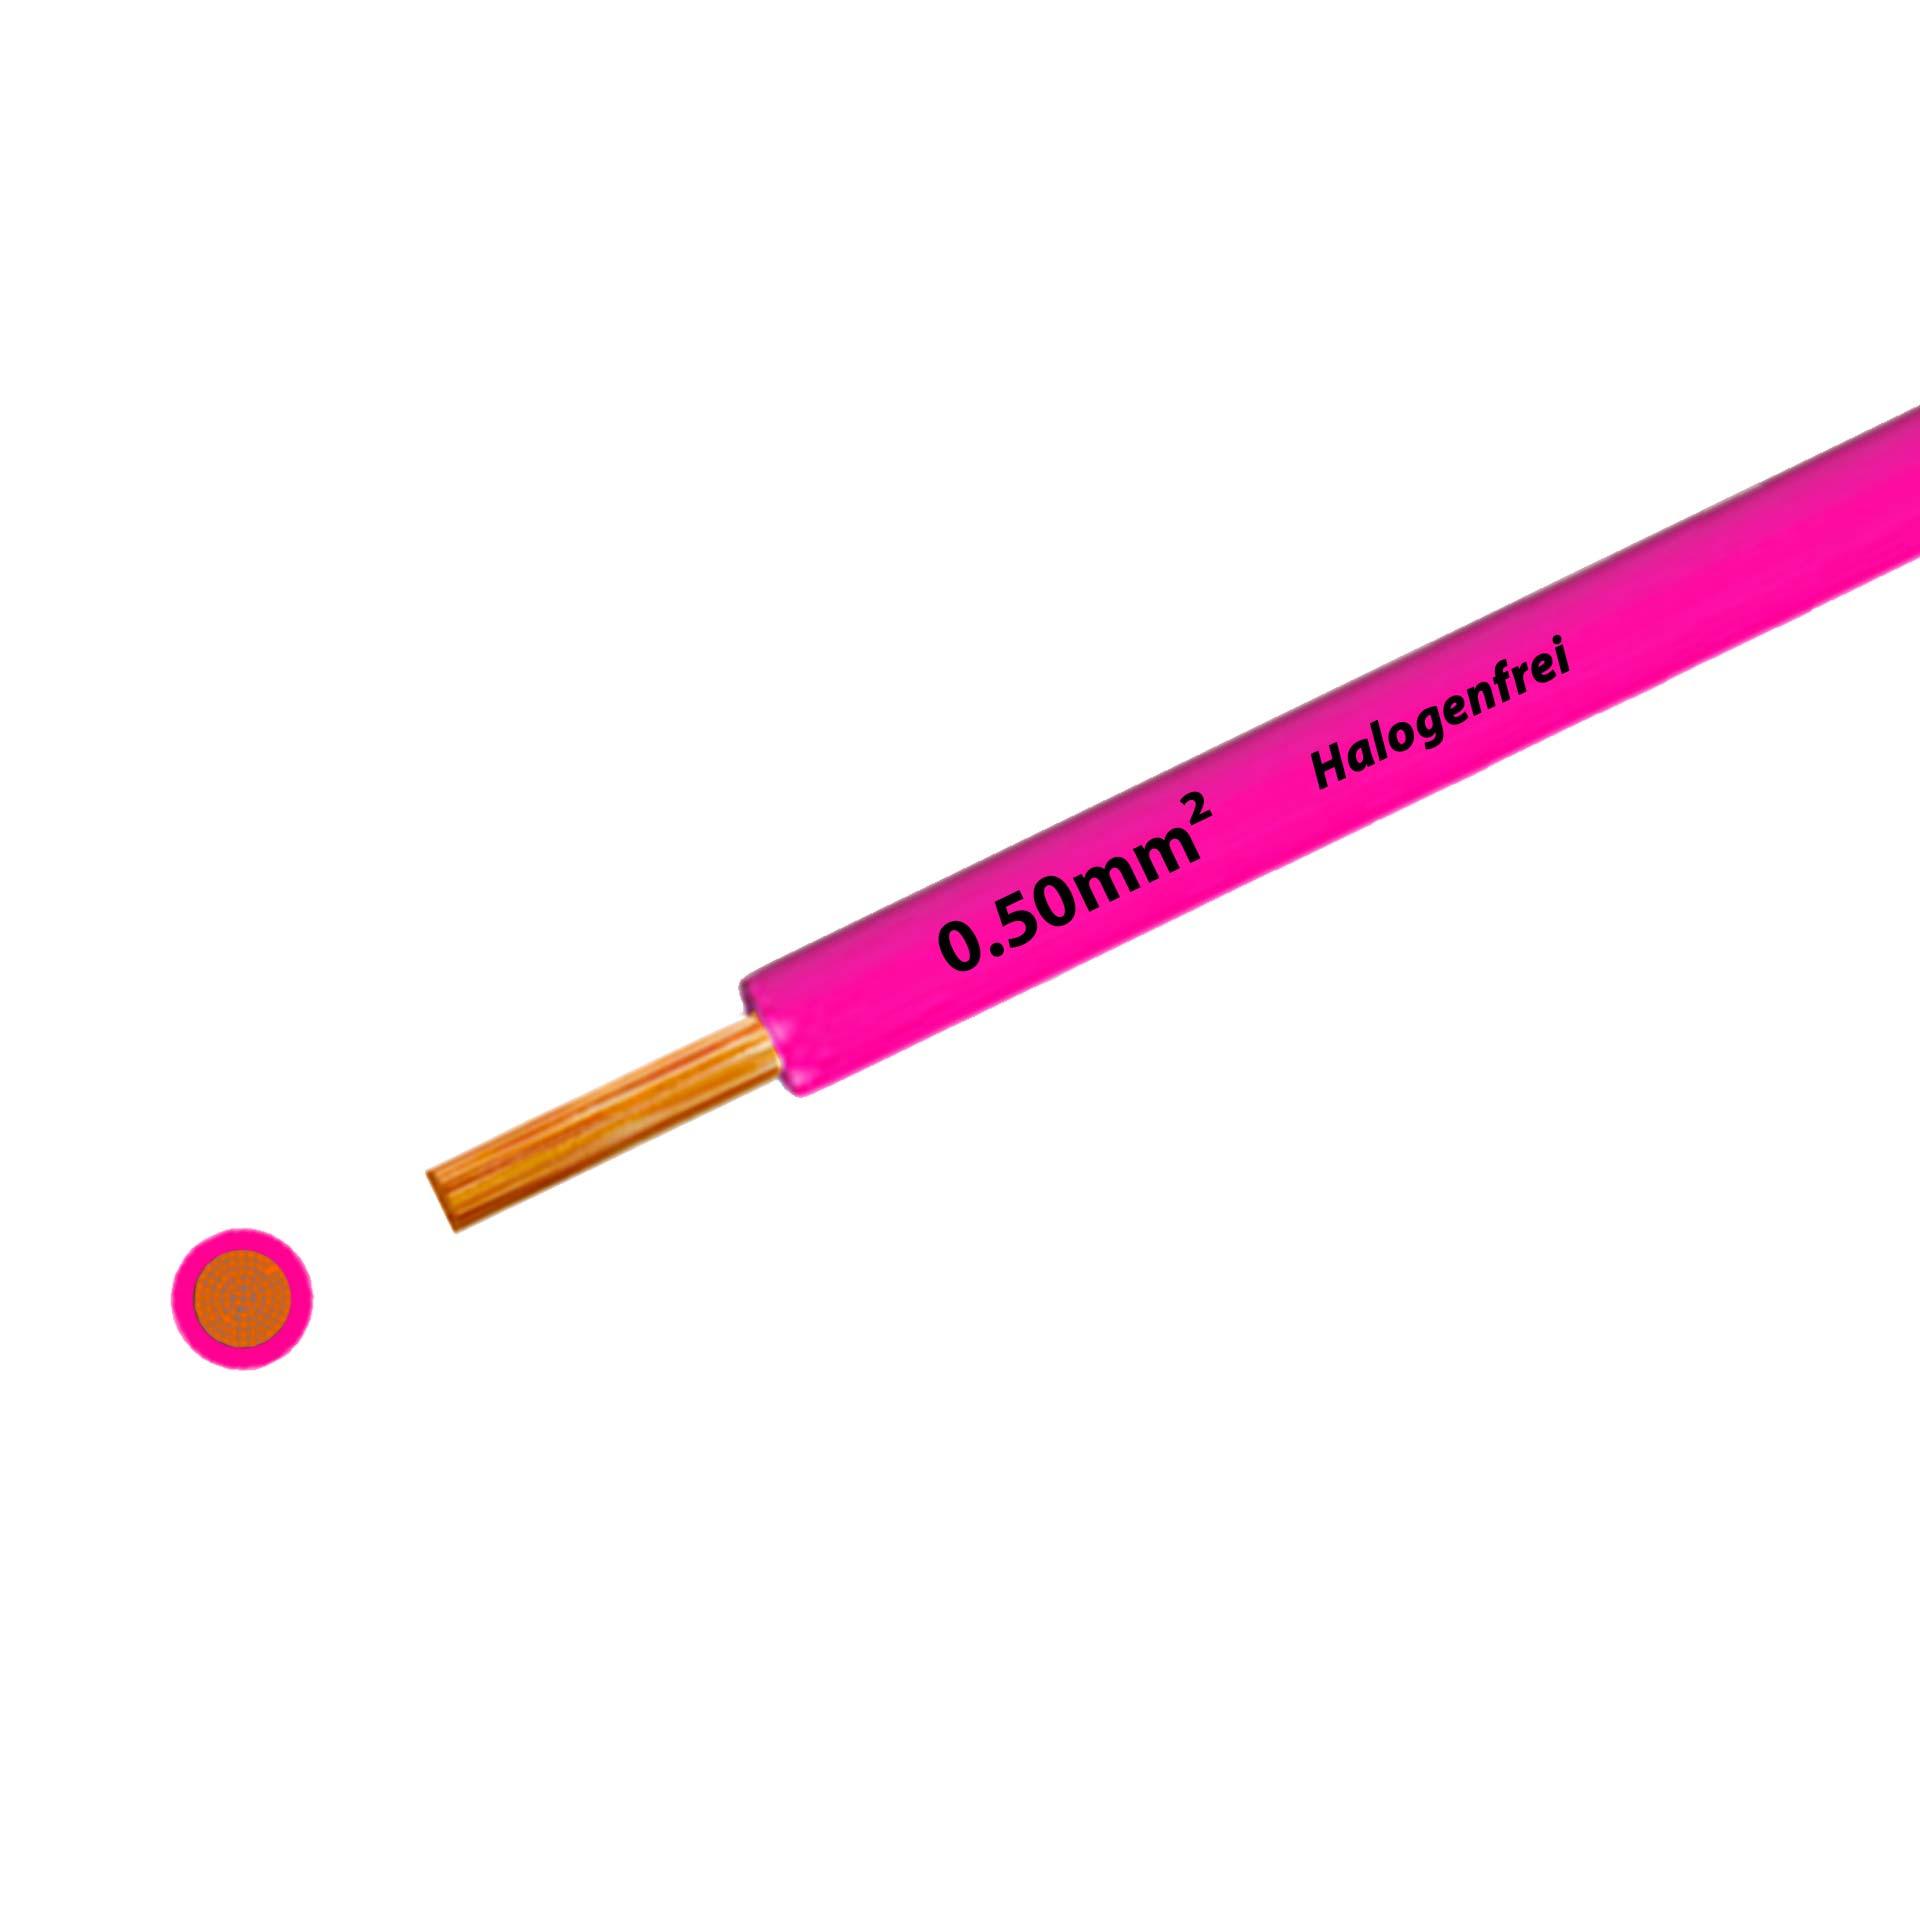 Litze halogenfrei 90° C , 500V, 0.50mm2, pink/rosa (RAL 3015), auf Kunststoffrolle